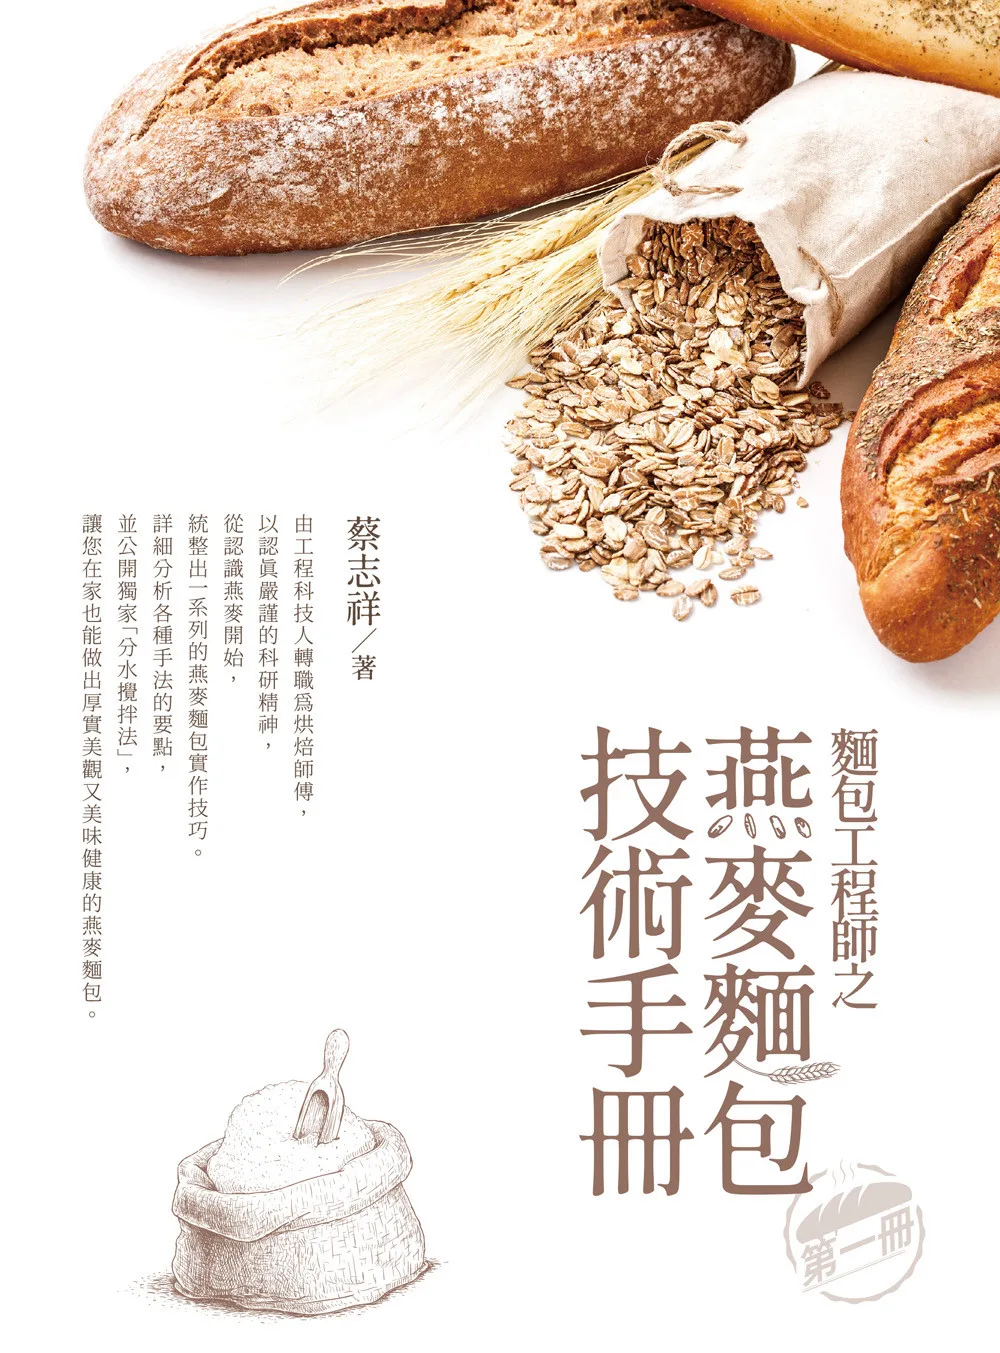 麵包工程師之燕麥麵包技術手冊